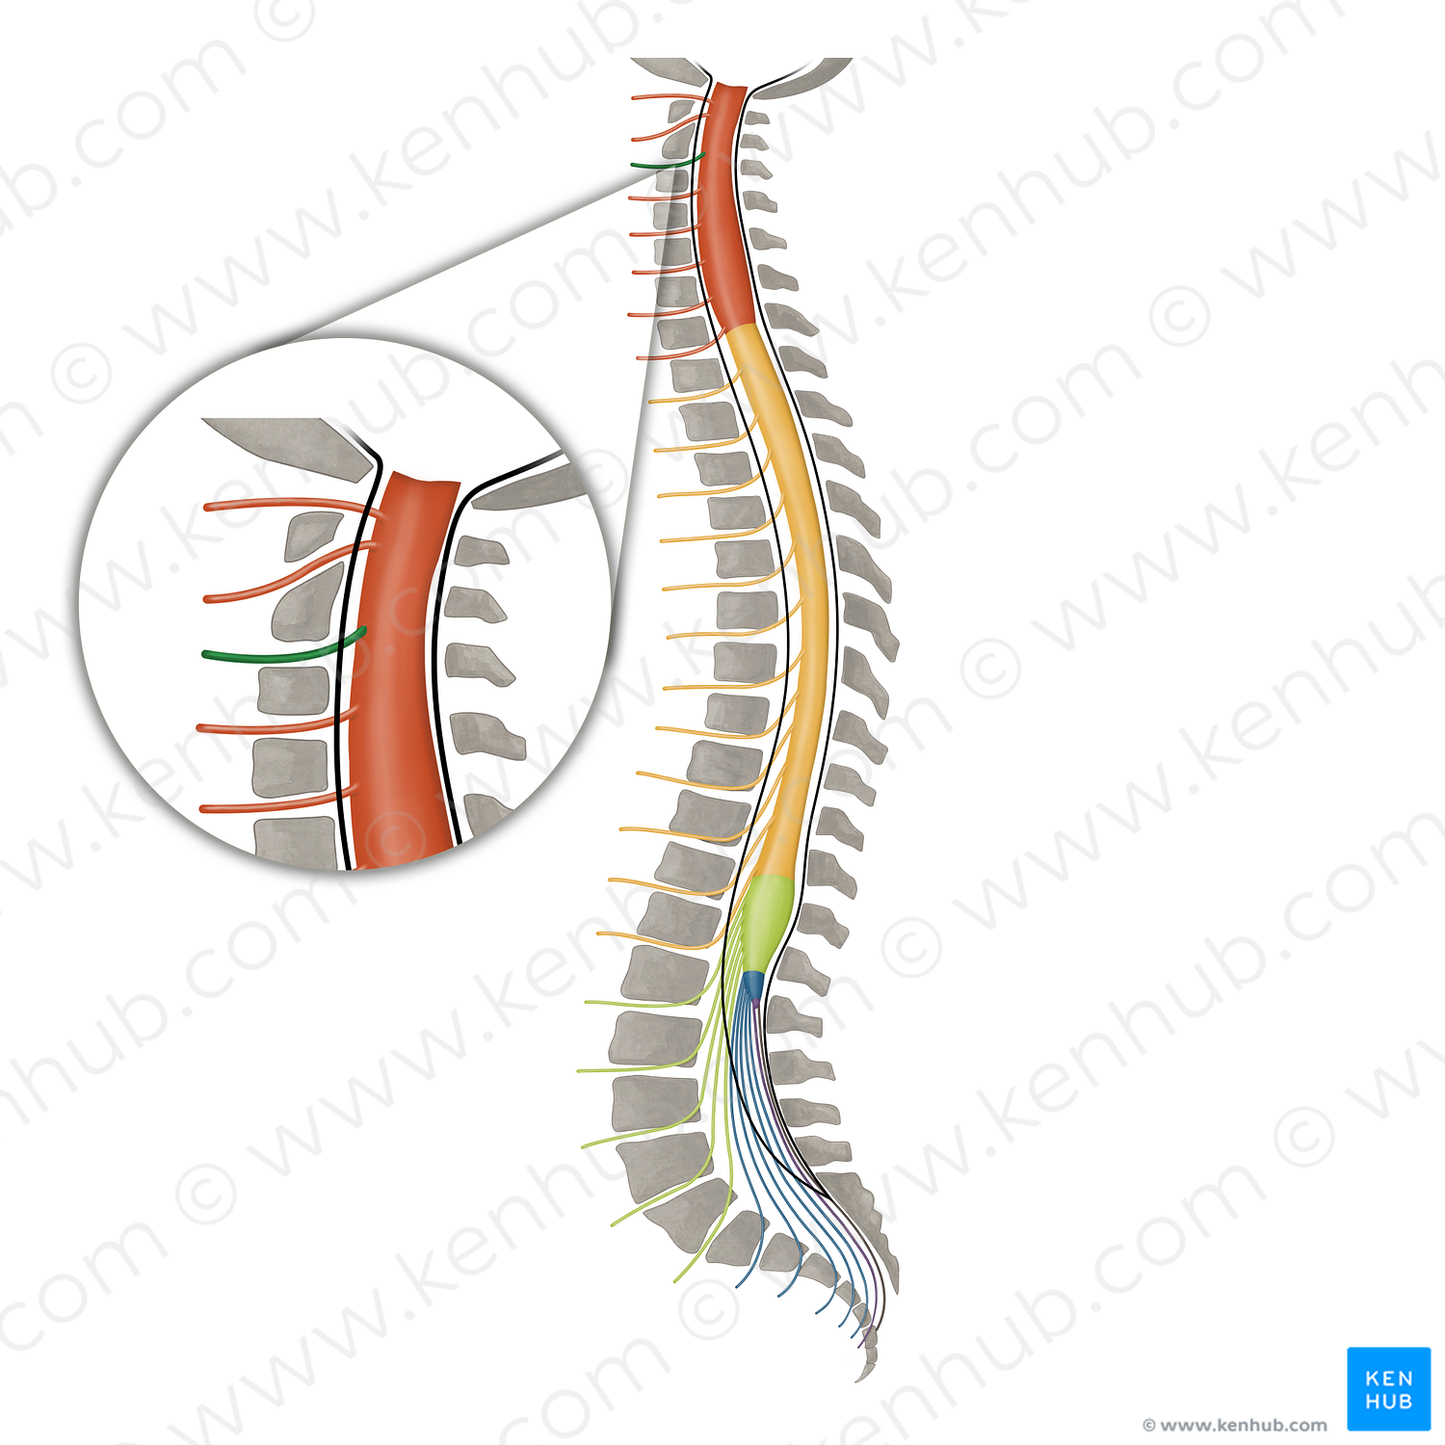 Spinal nerve C3 (#16090)